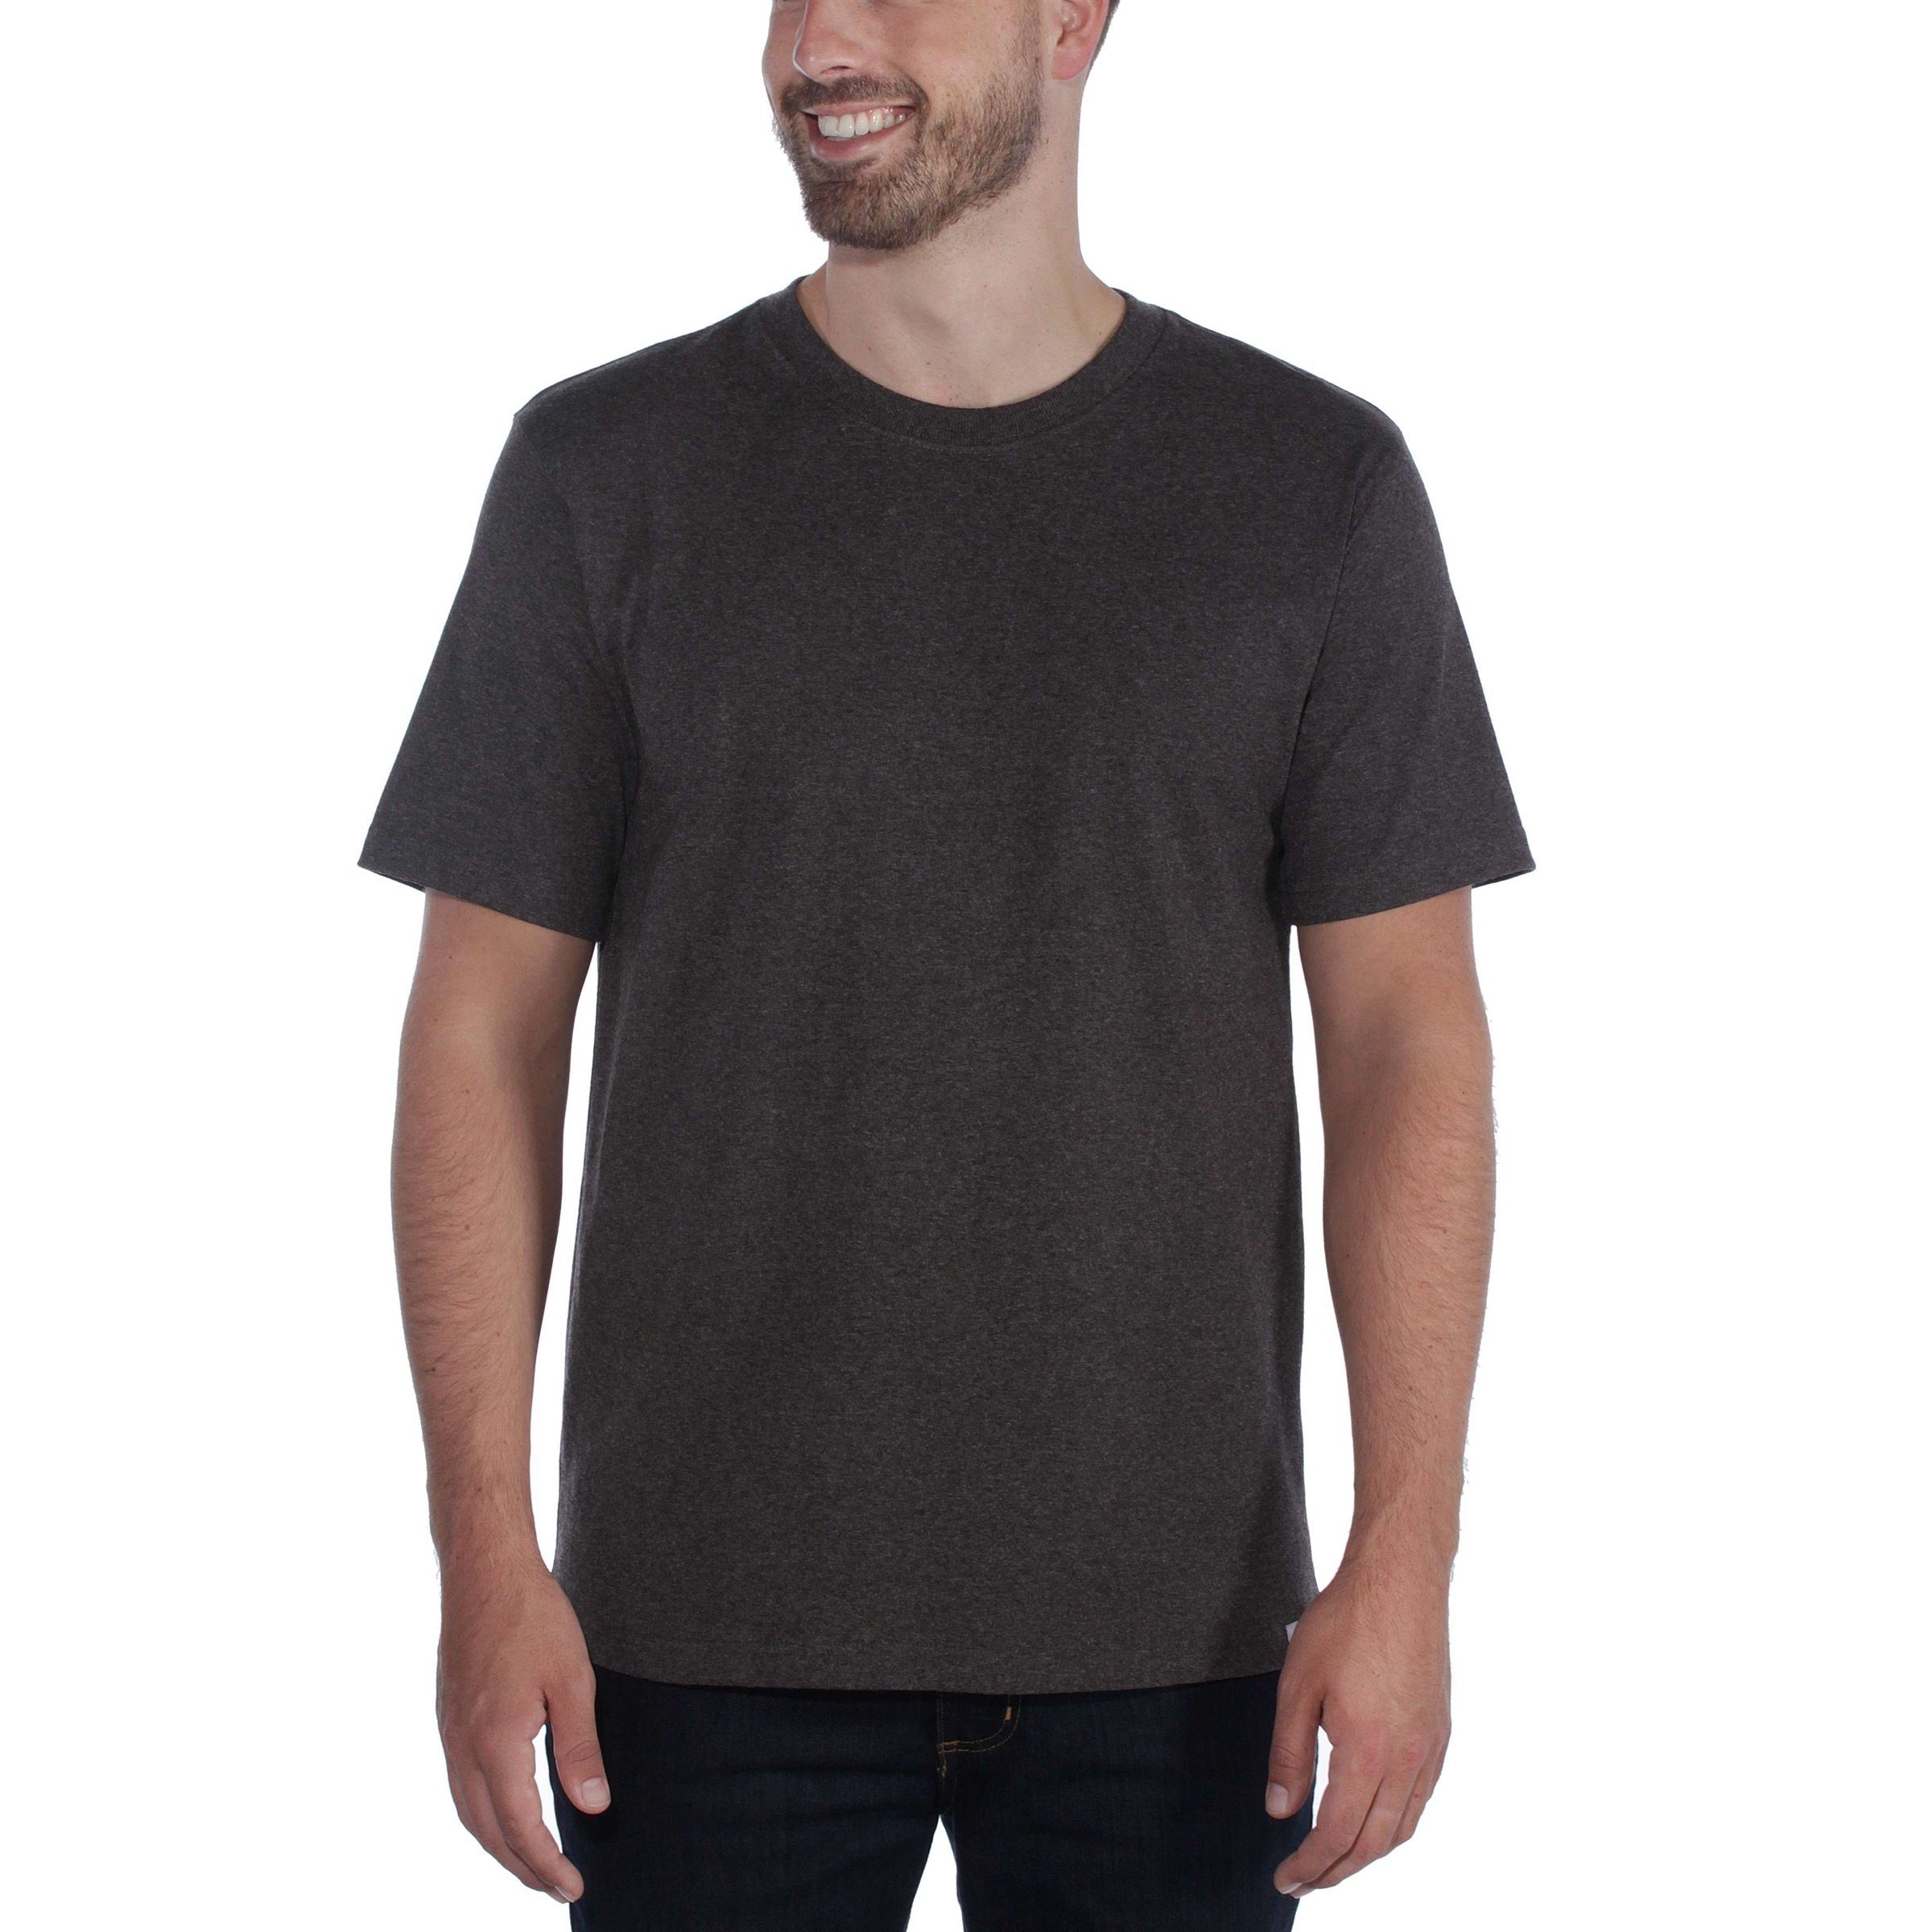 T-Shirt Herren Relaxed Fit Carhartt Short-Sleeve Adult T-Shirt navy Heavyweight Carhartt